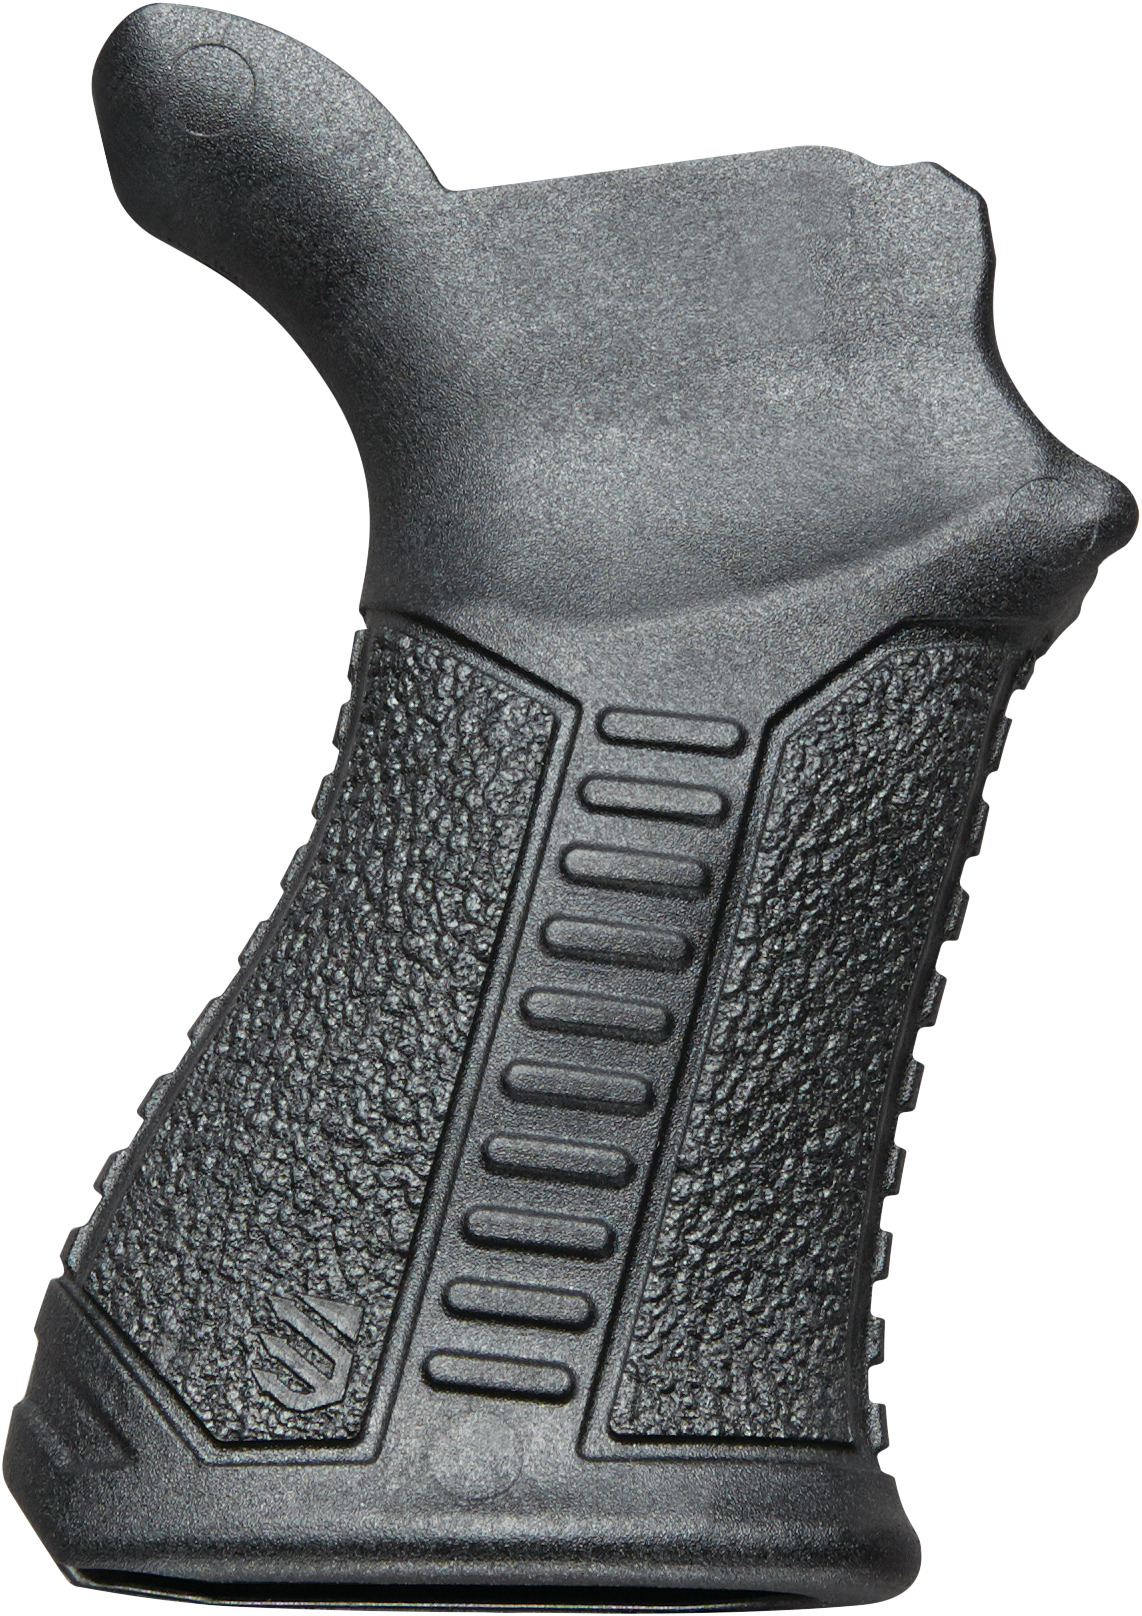 Knoxx AR Pistol Grip - Black